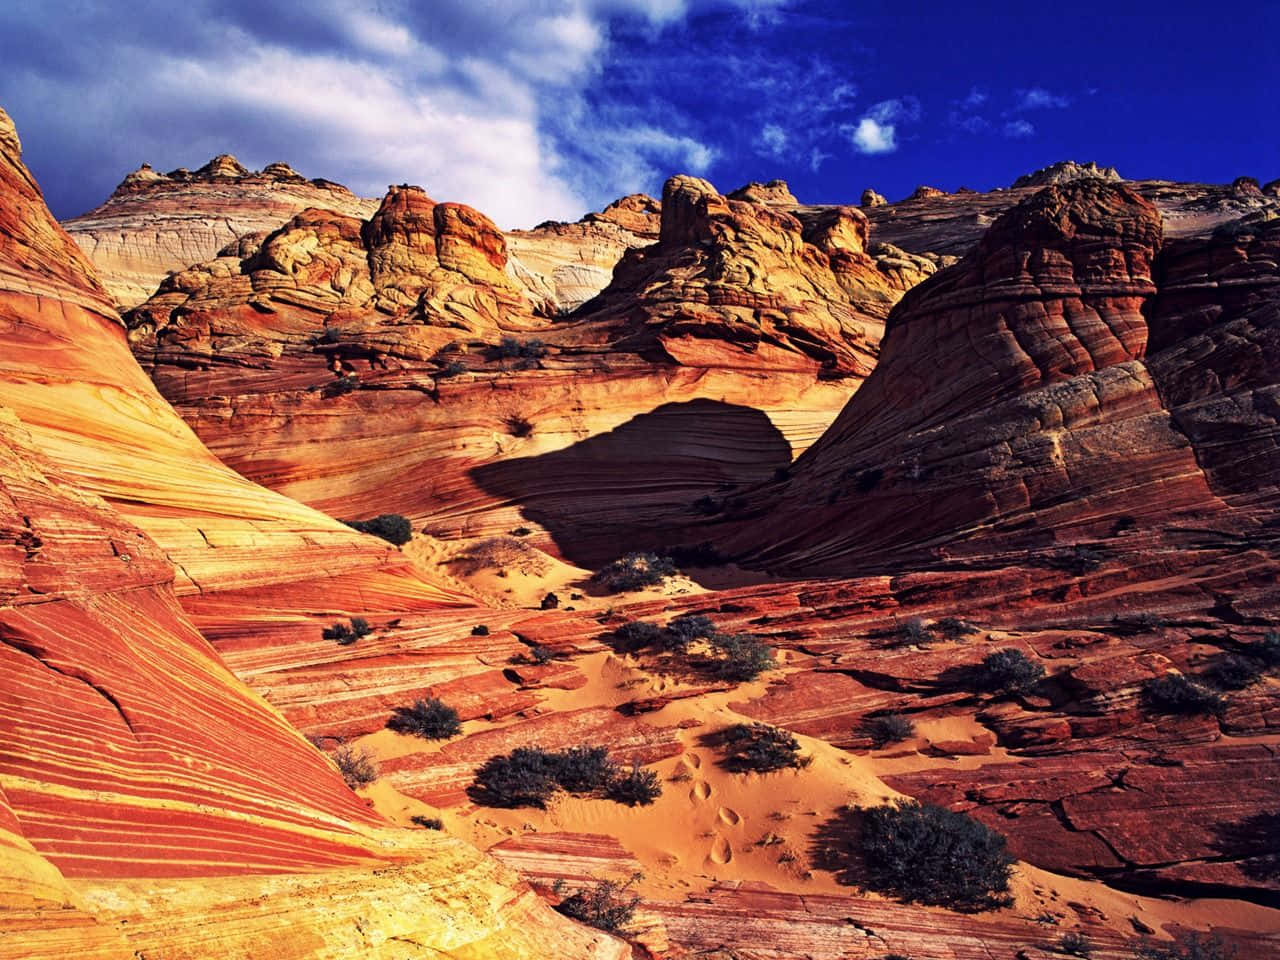 “Bevidne skønheden i Arizona's ørkener”